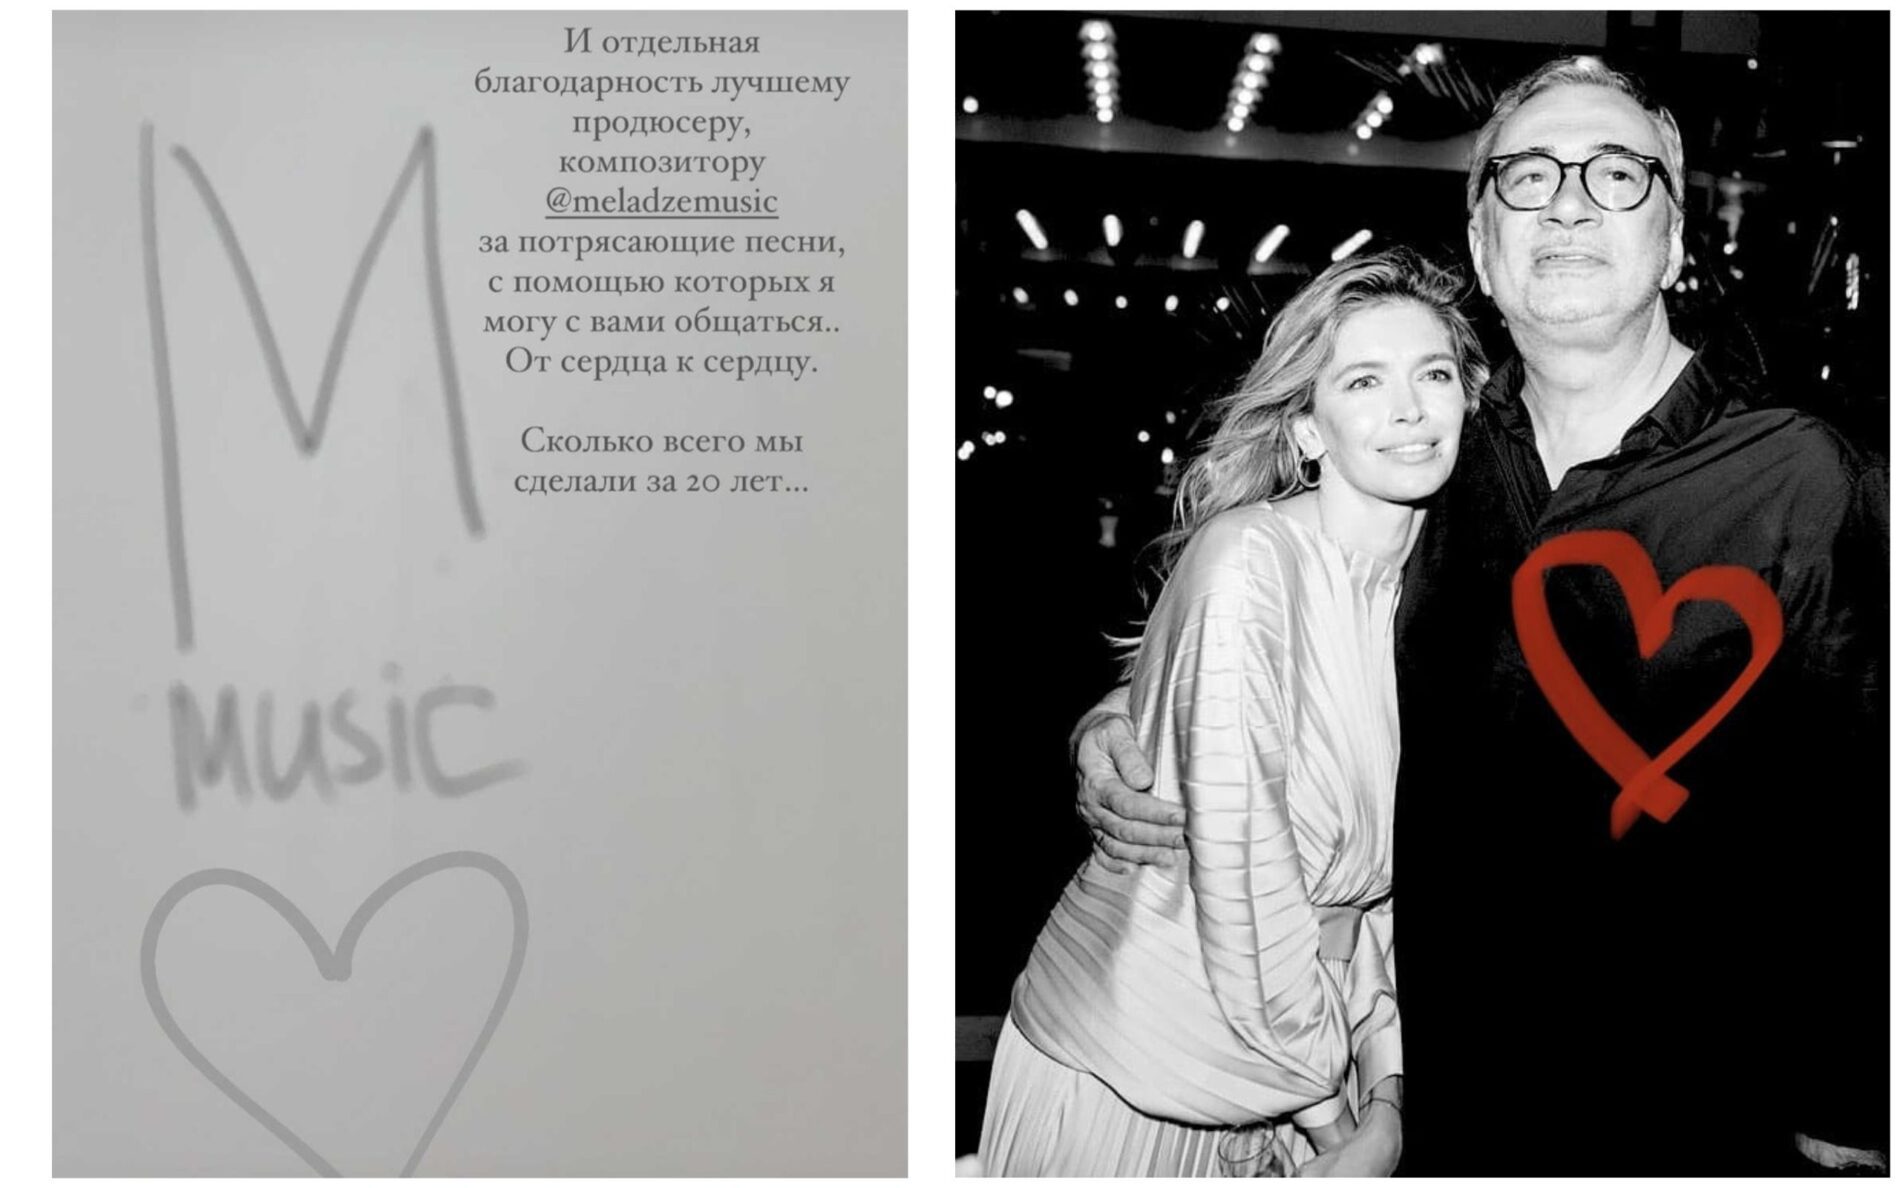 Скірншот зі сторіз Брєжнєвої і фото пари зі сторінки Меладзе